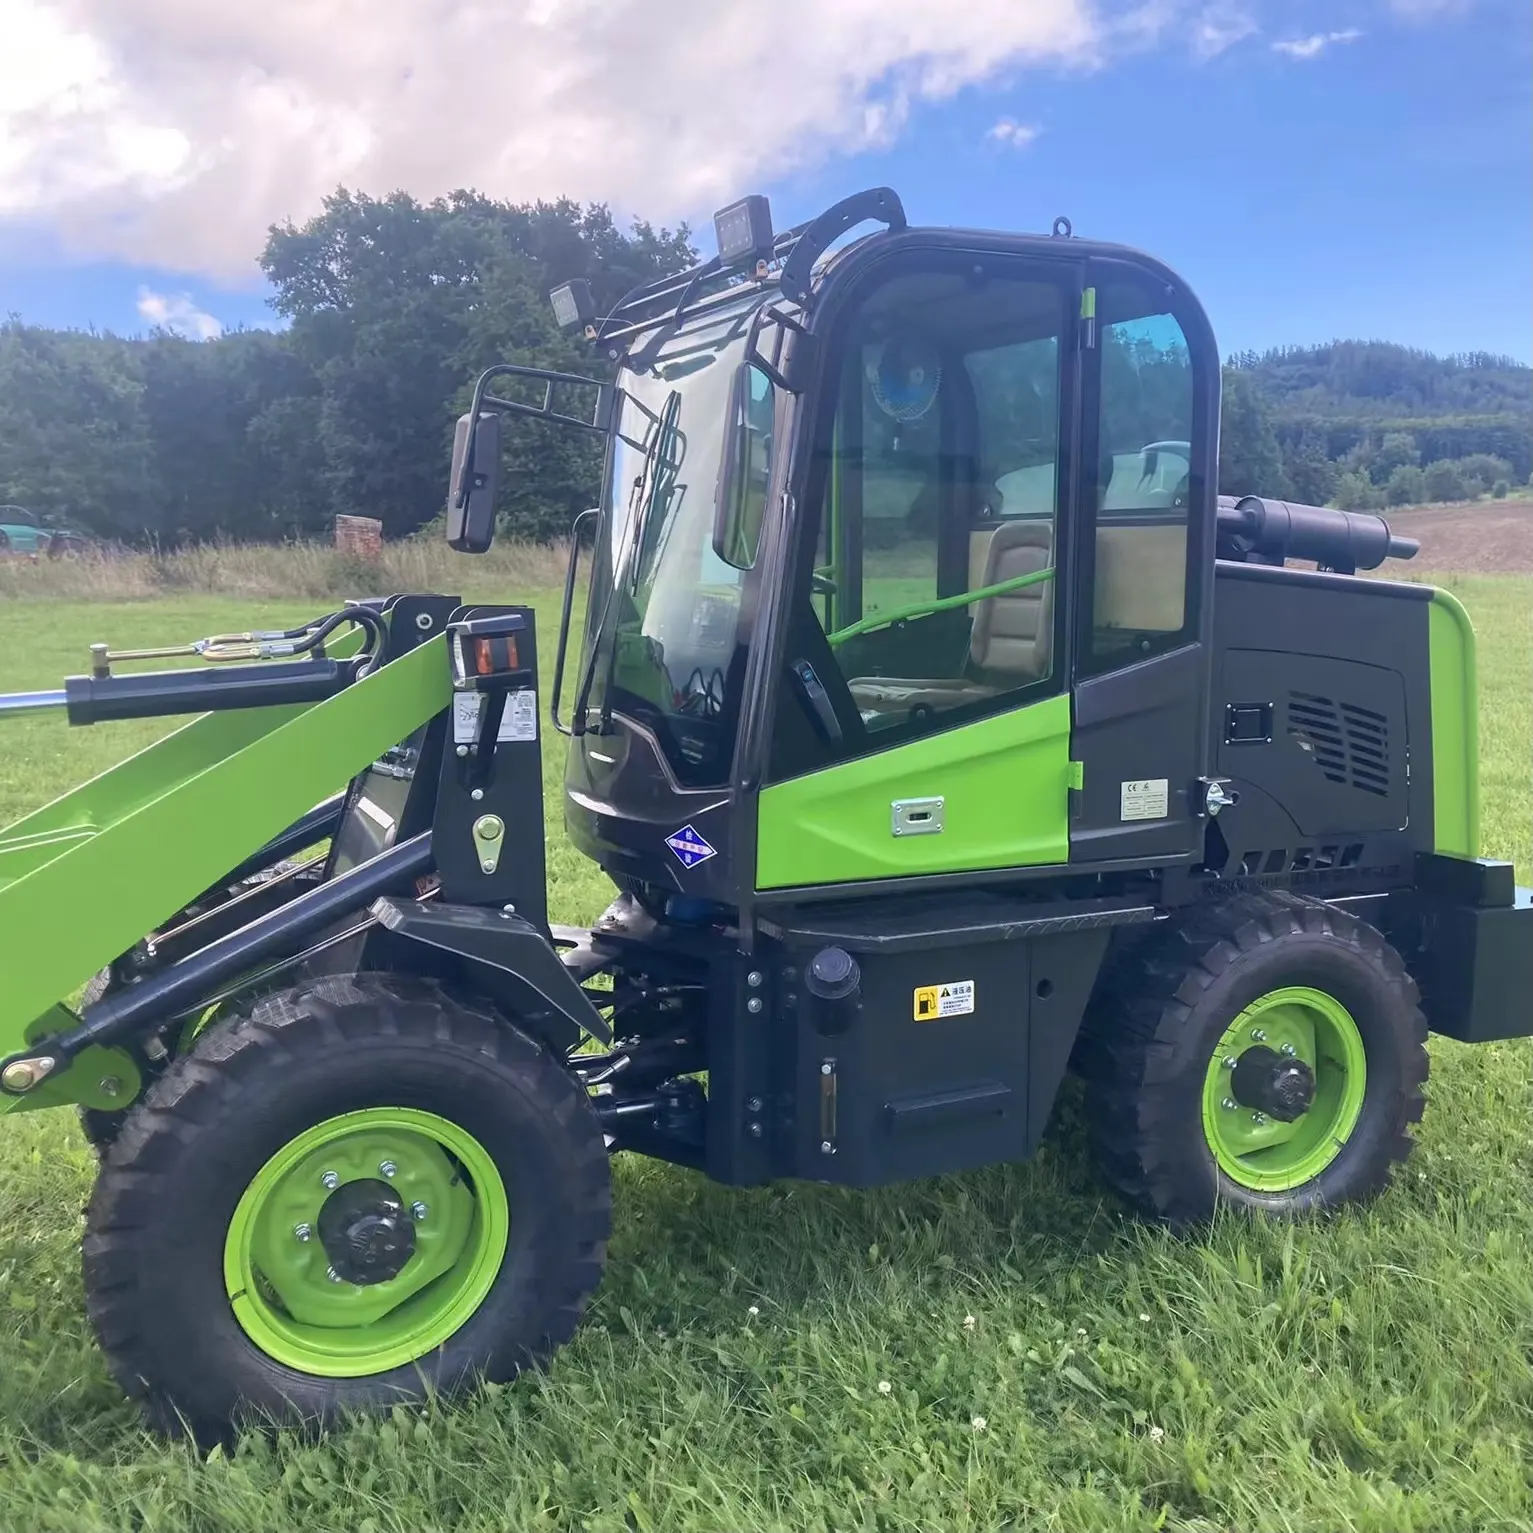 2200KG 920 Radlader K920T mit neuem Design und Allradantrieb für Bau-und landwirtschaft liche Arbeiten/Landwirtschaft